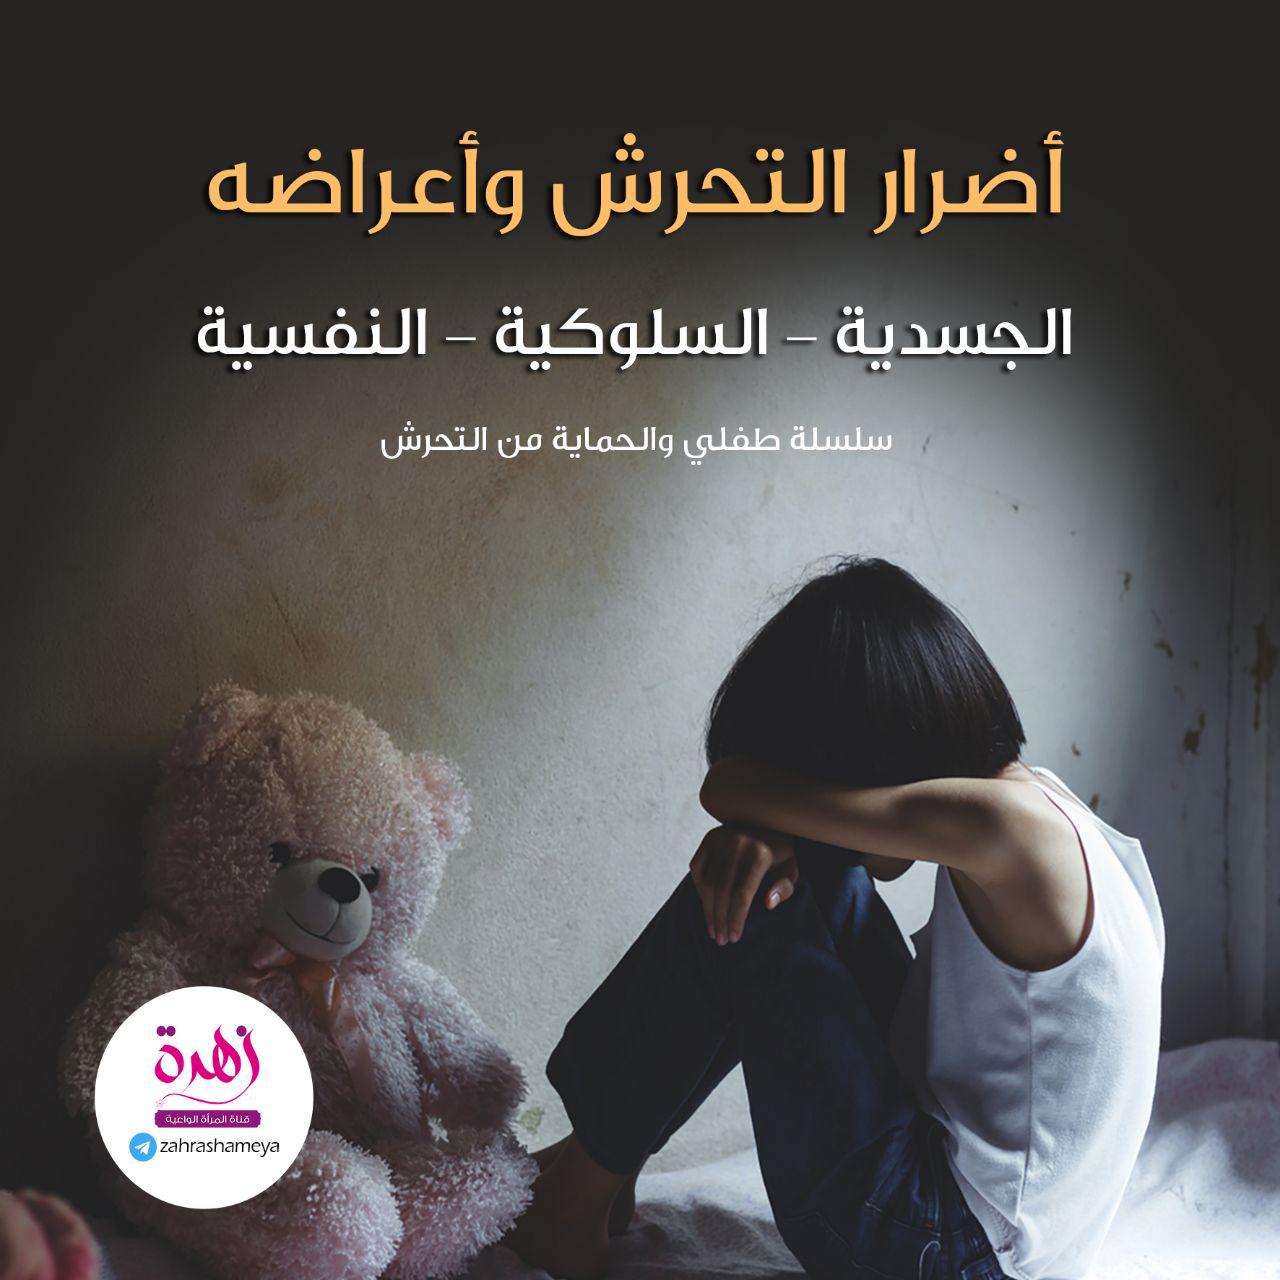 طفلي والحماية من التحرش - أضرار التحرش وأعراضه